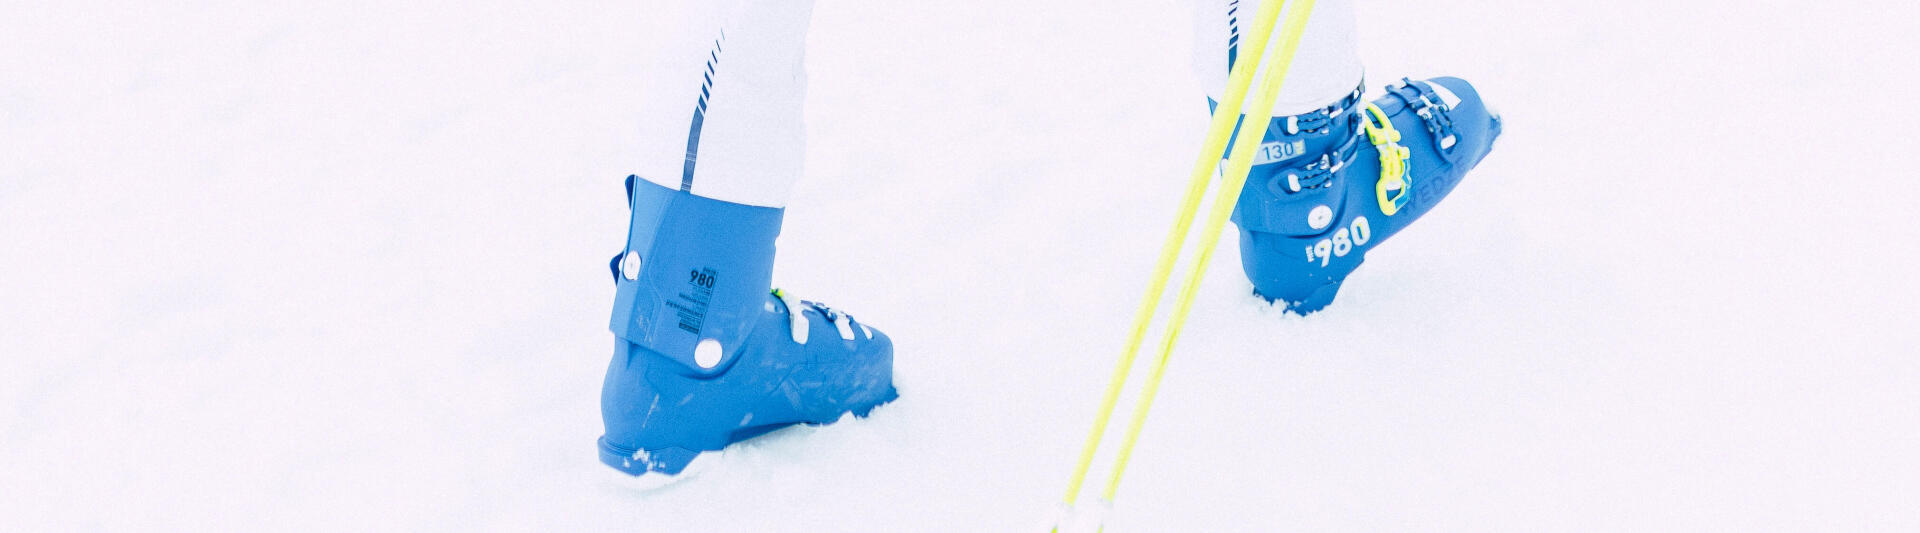 Come scegliere la misura degli scarponi da sci